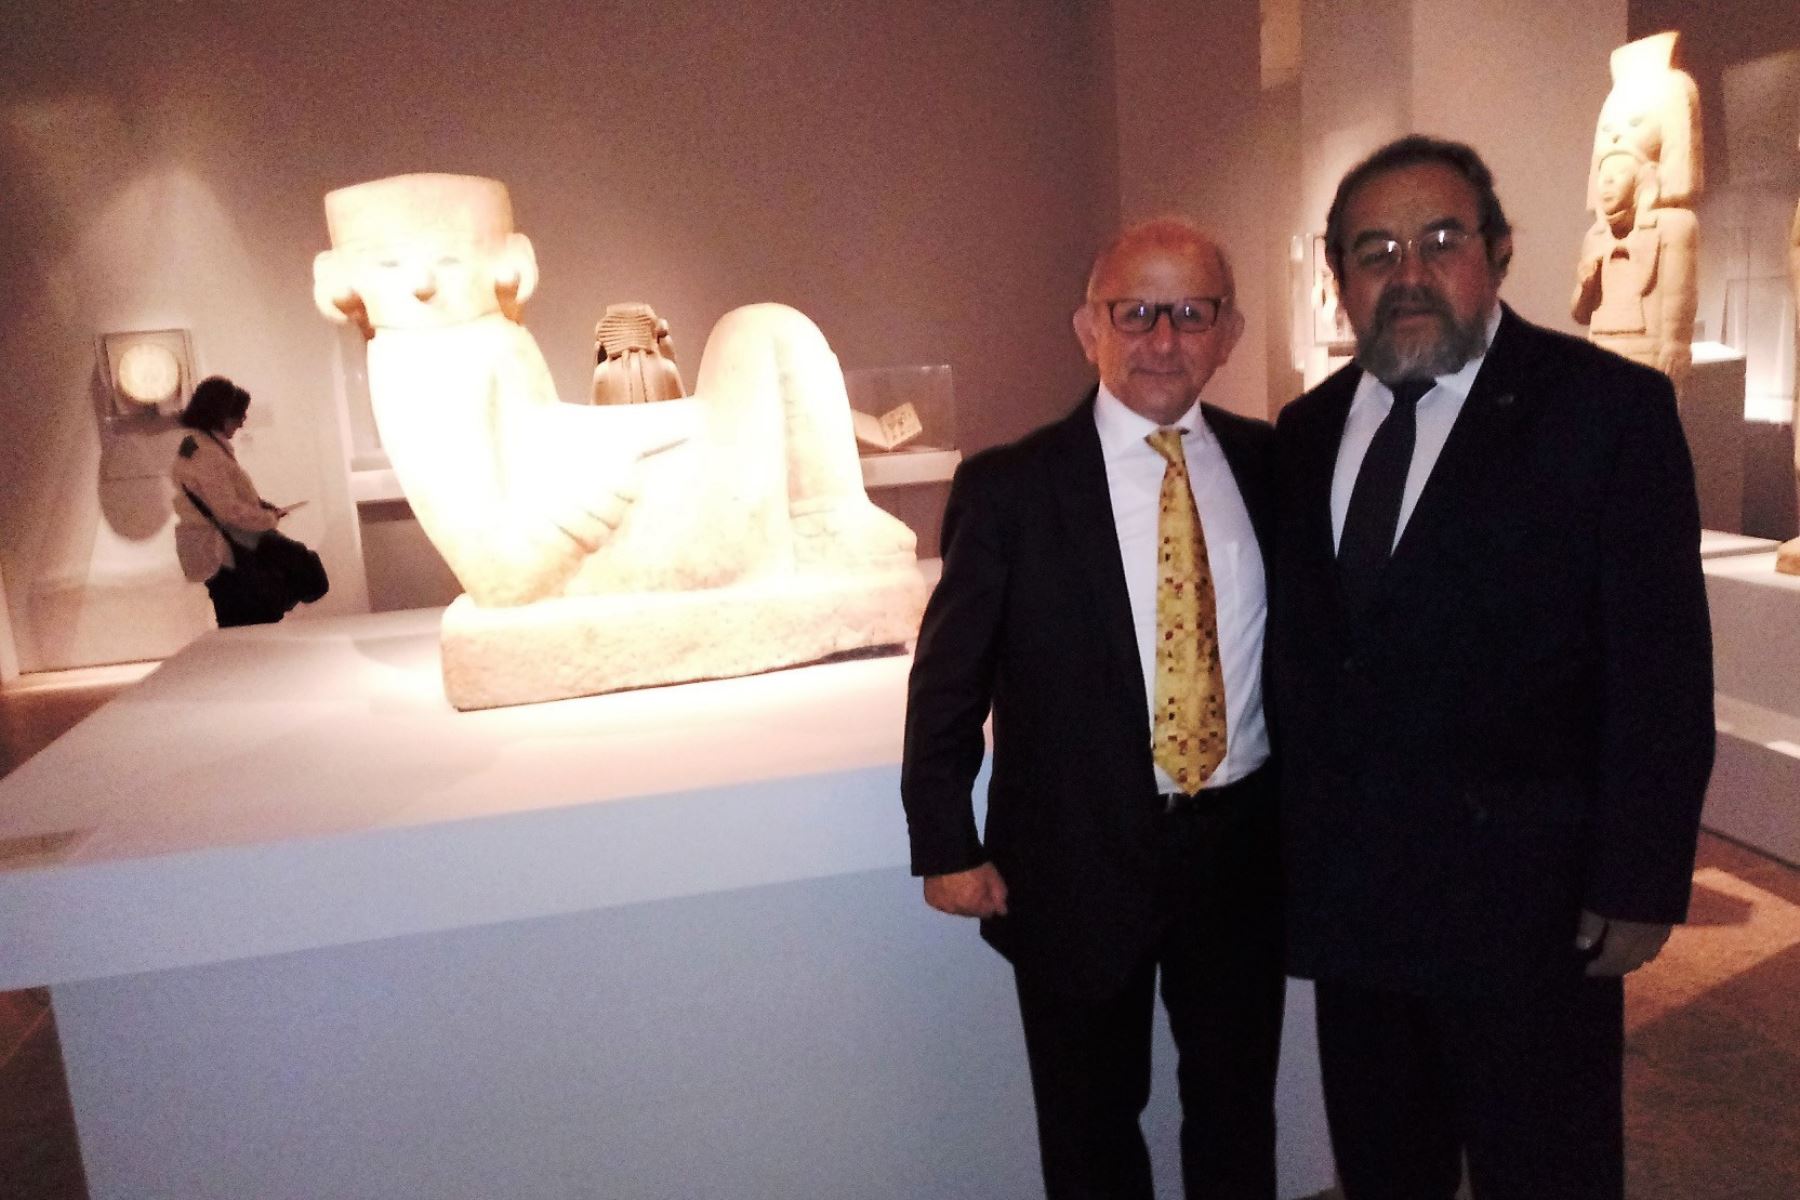 El arqueólogo Walter Alva estuvo presente en la inauguración de la muestra y destacó que esta exhibición favorece al Perú. ANDINA